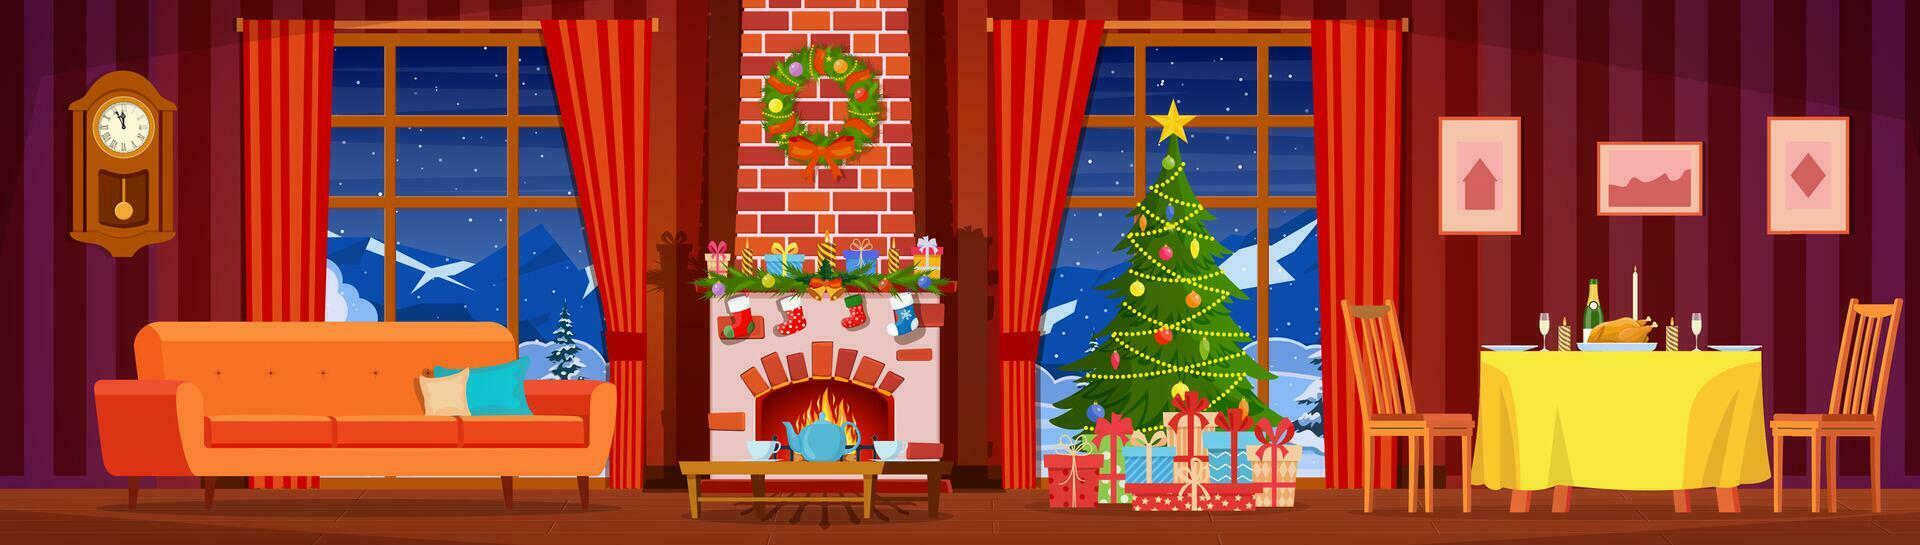 festivo interior do vivo sala, Novo ano. Natal árvore, festivo mesa, presentes acima lareira para Novo ano, lindo mobília, lareira, Natal guirlanda, decorações. vetor ilustração